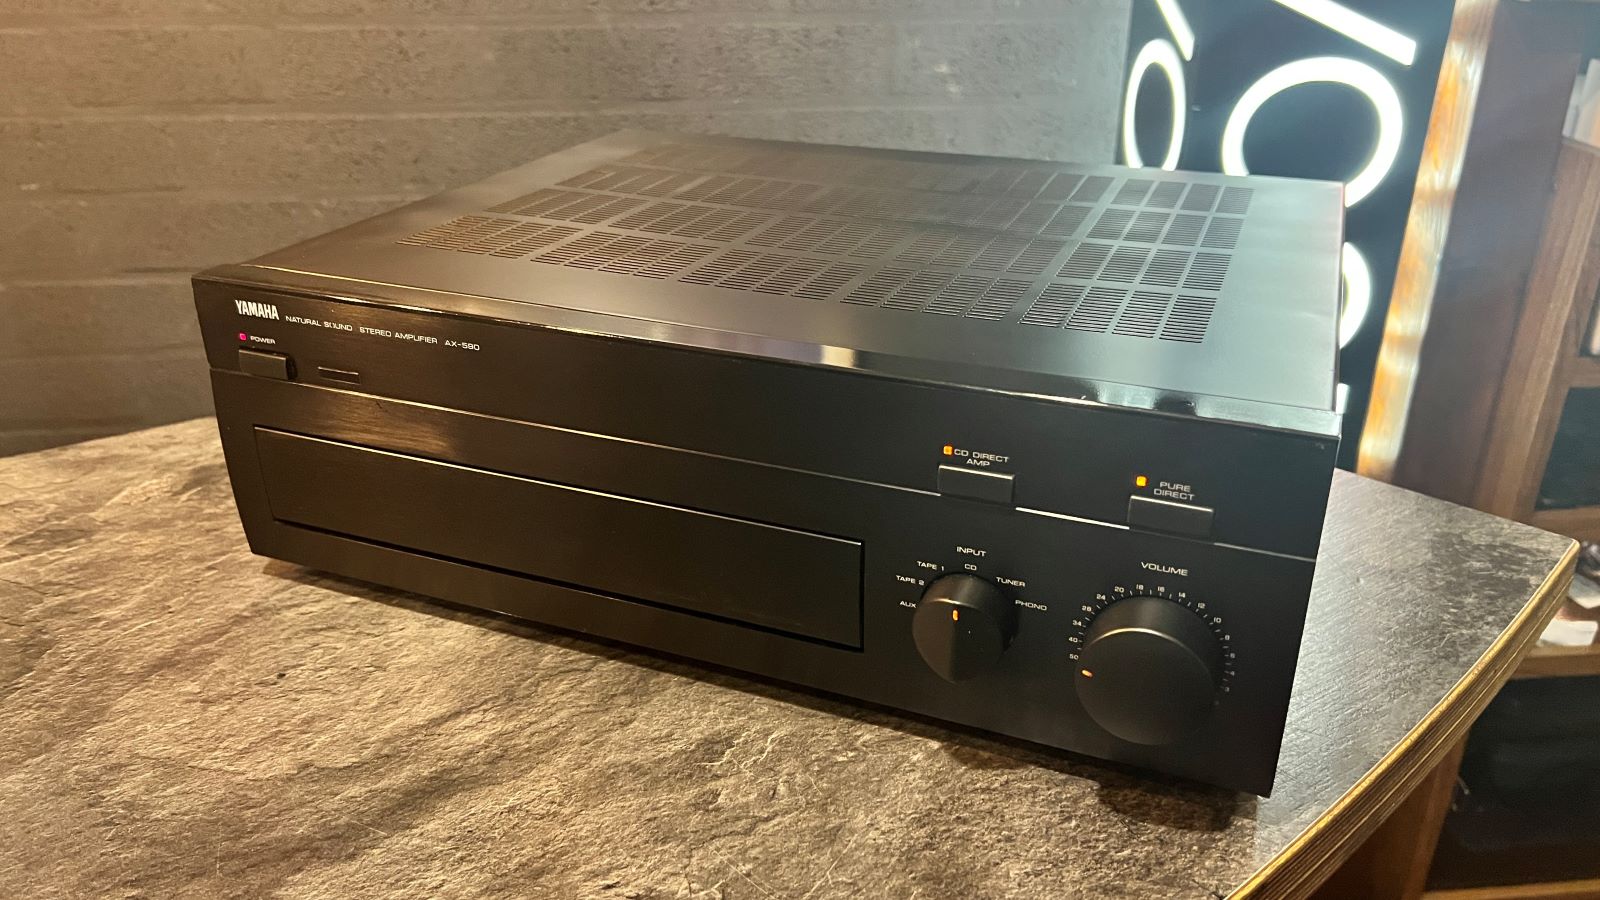 Yamaha AX-590 Stereo versterker mét MM/MC phonotrap